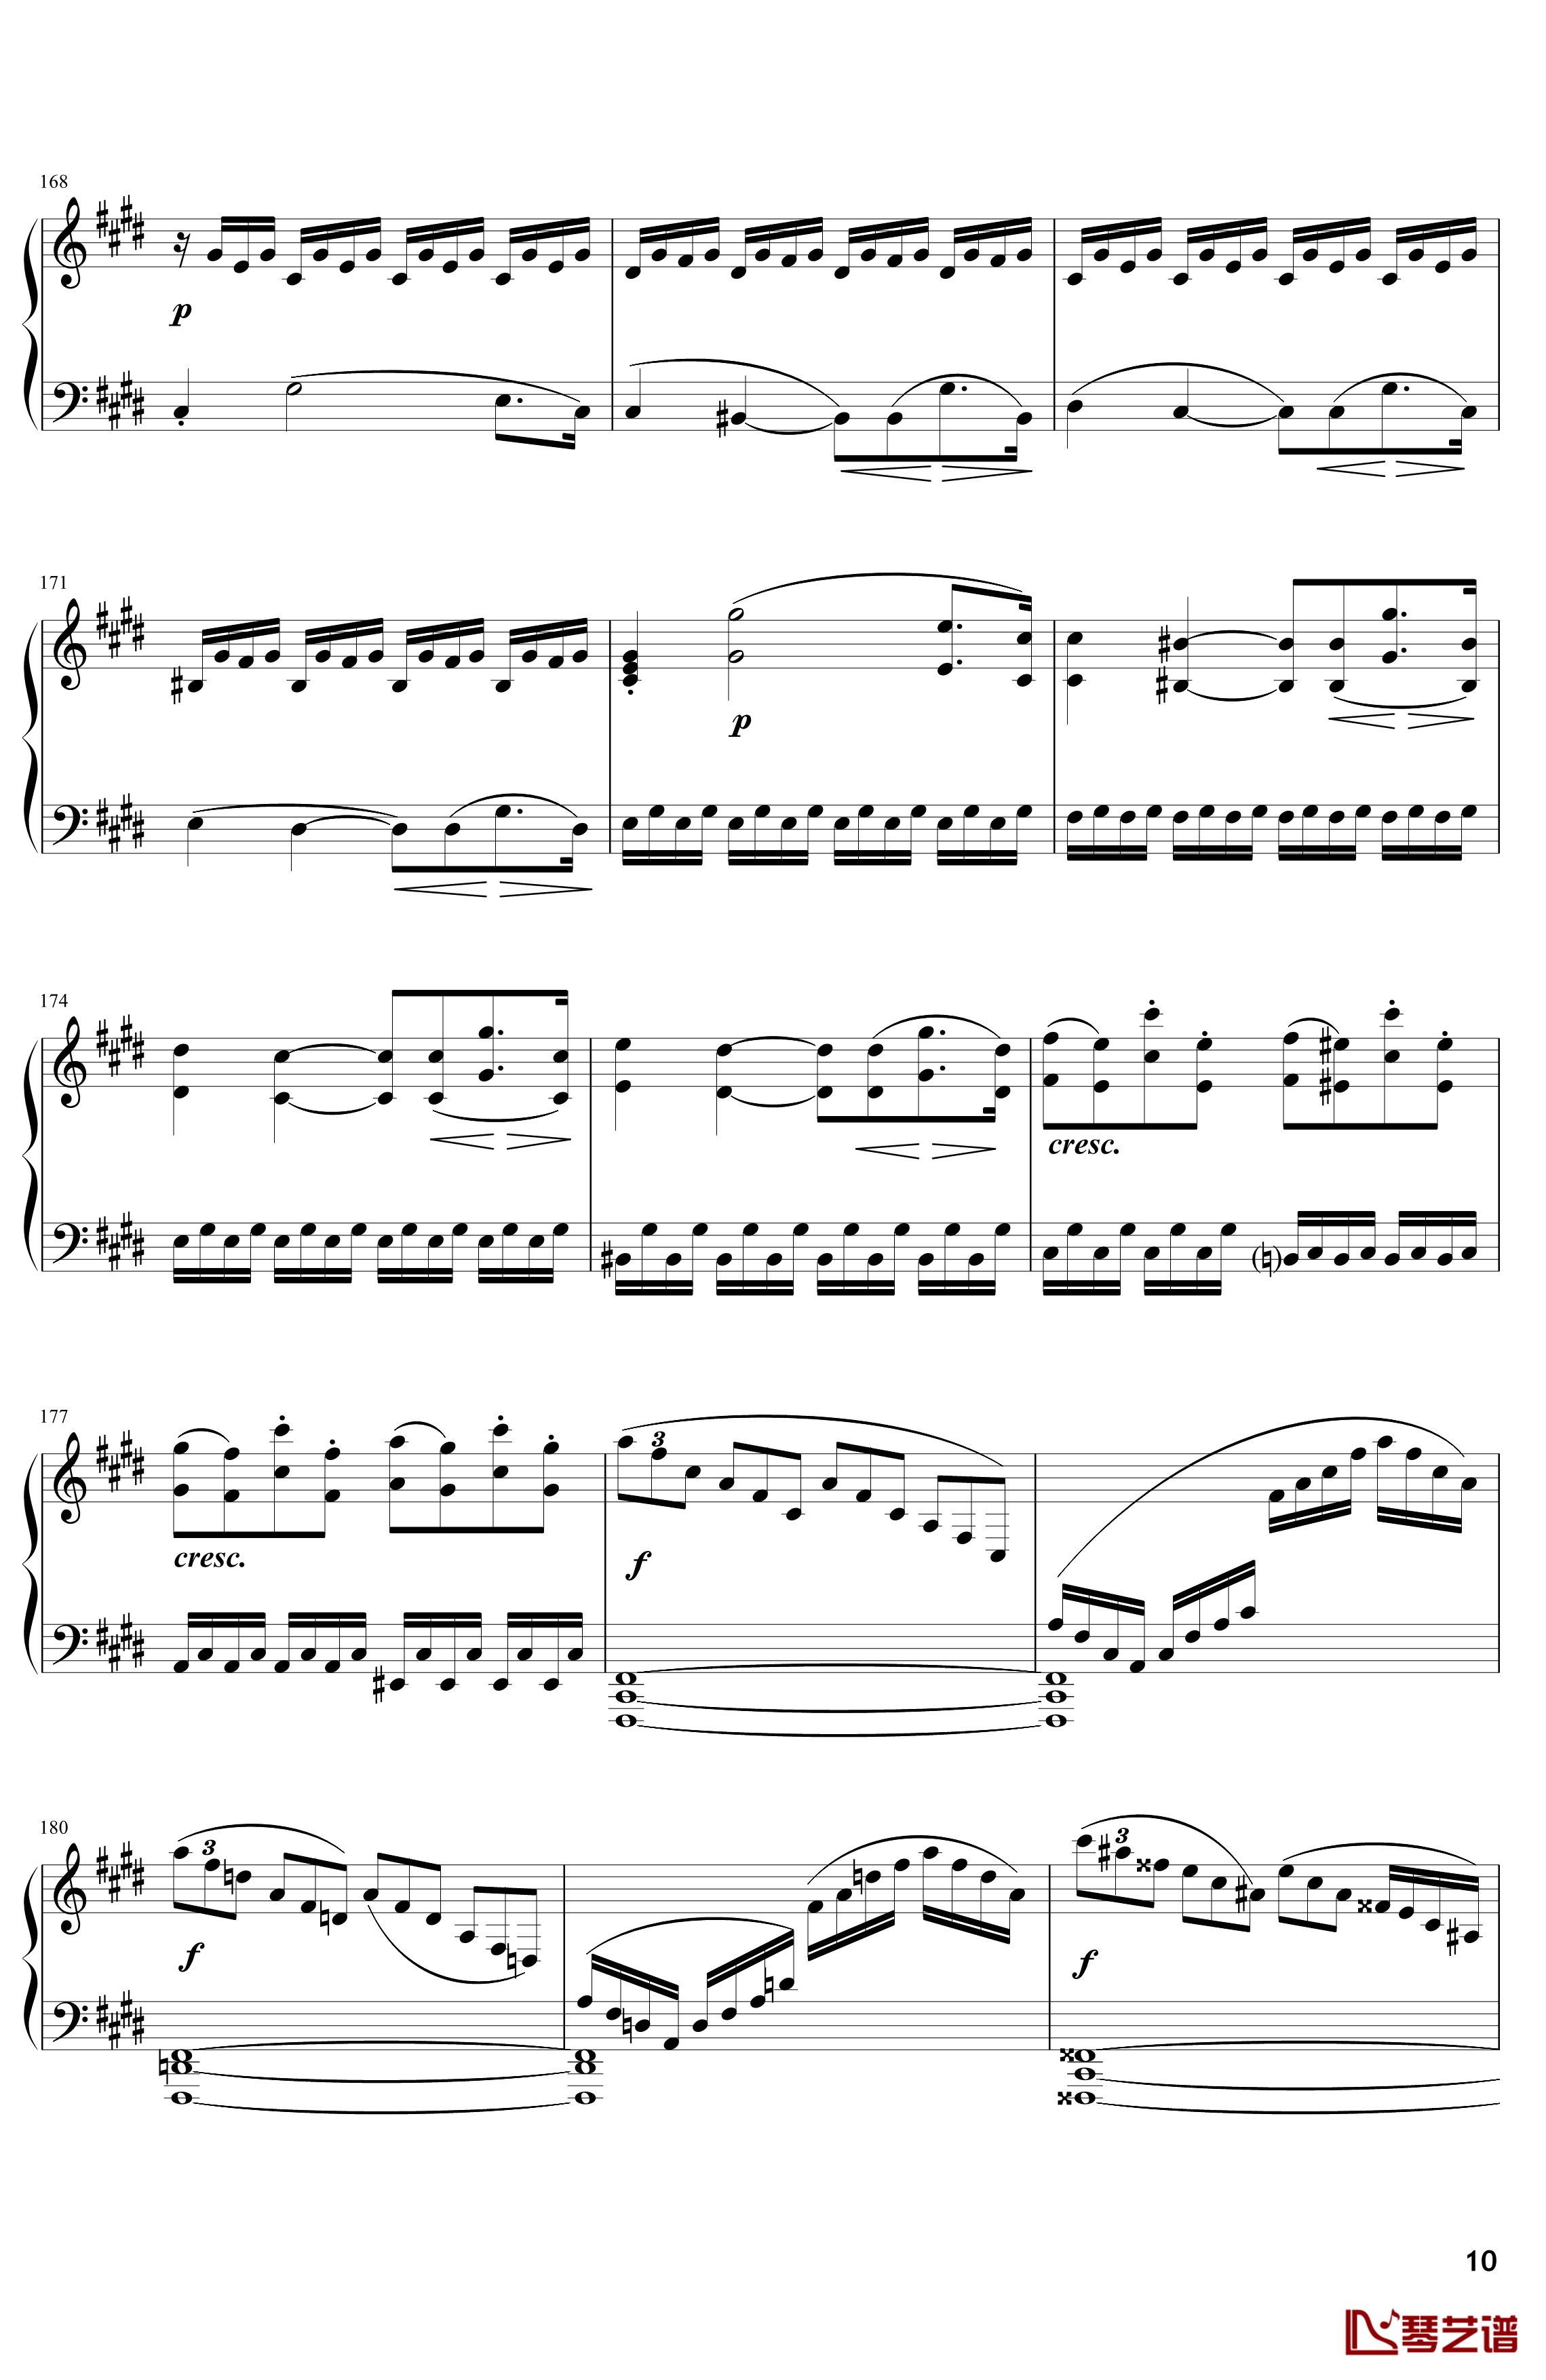 月光钢琴谱-奏鸣曲-贝多芬-beethoven10